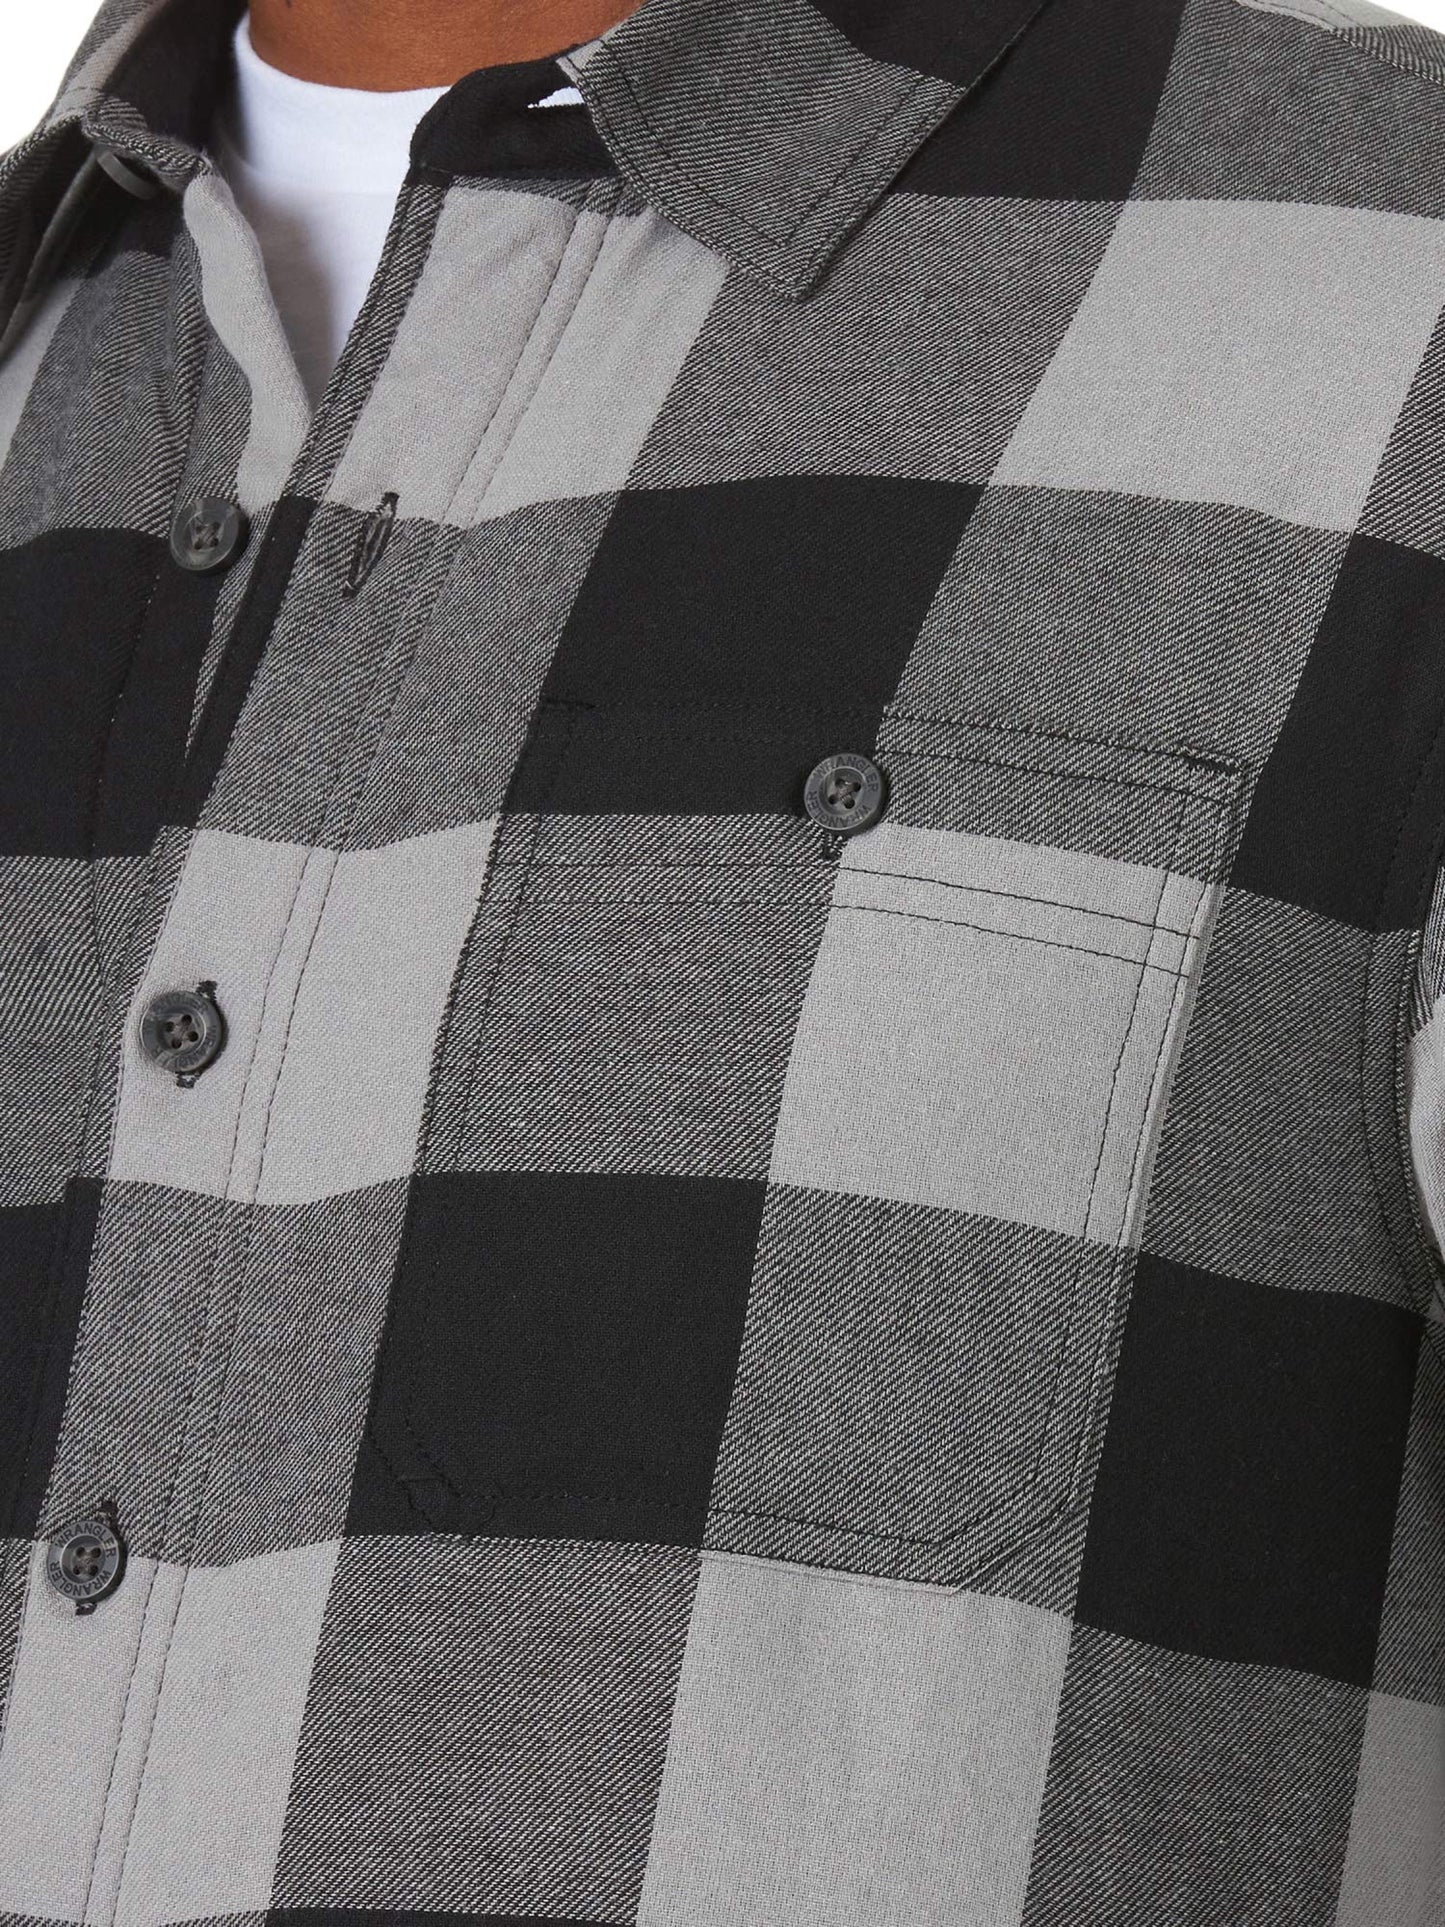 Wrangler Authentics Men's Long Sleeve Sherpa Lined Shirt Jacket, Grey Buffalo, Medium